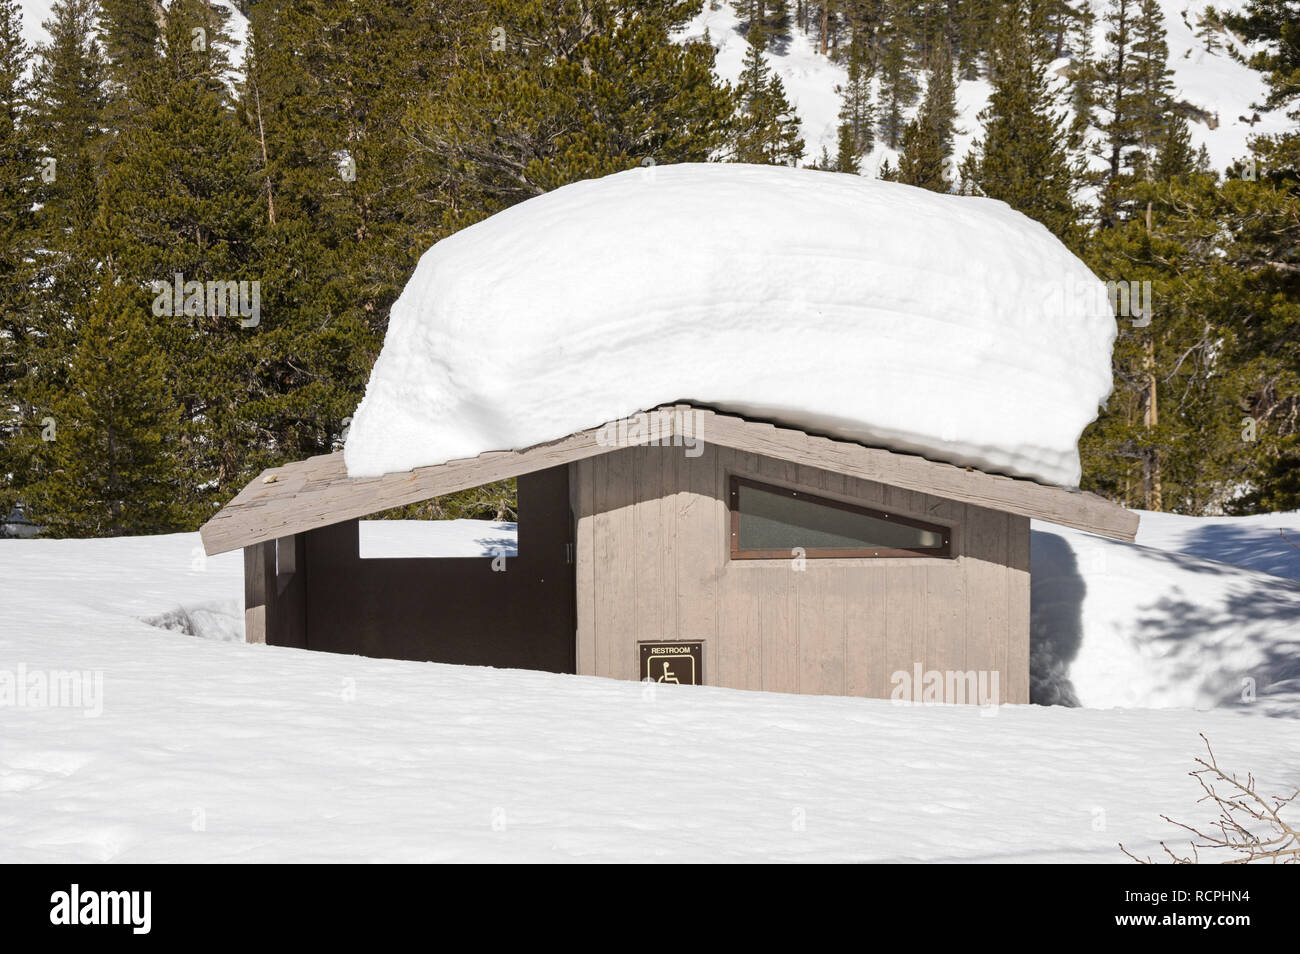 Forest Service konkrete Outhouse restroom Hälfte im tiefen Winter Schnee bedeckt Stockfoto